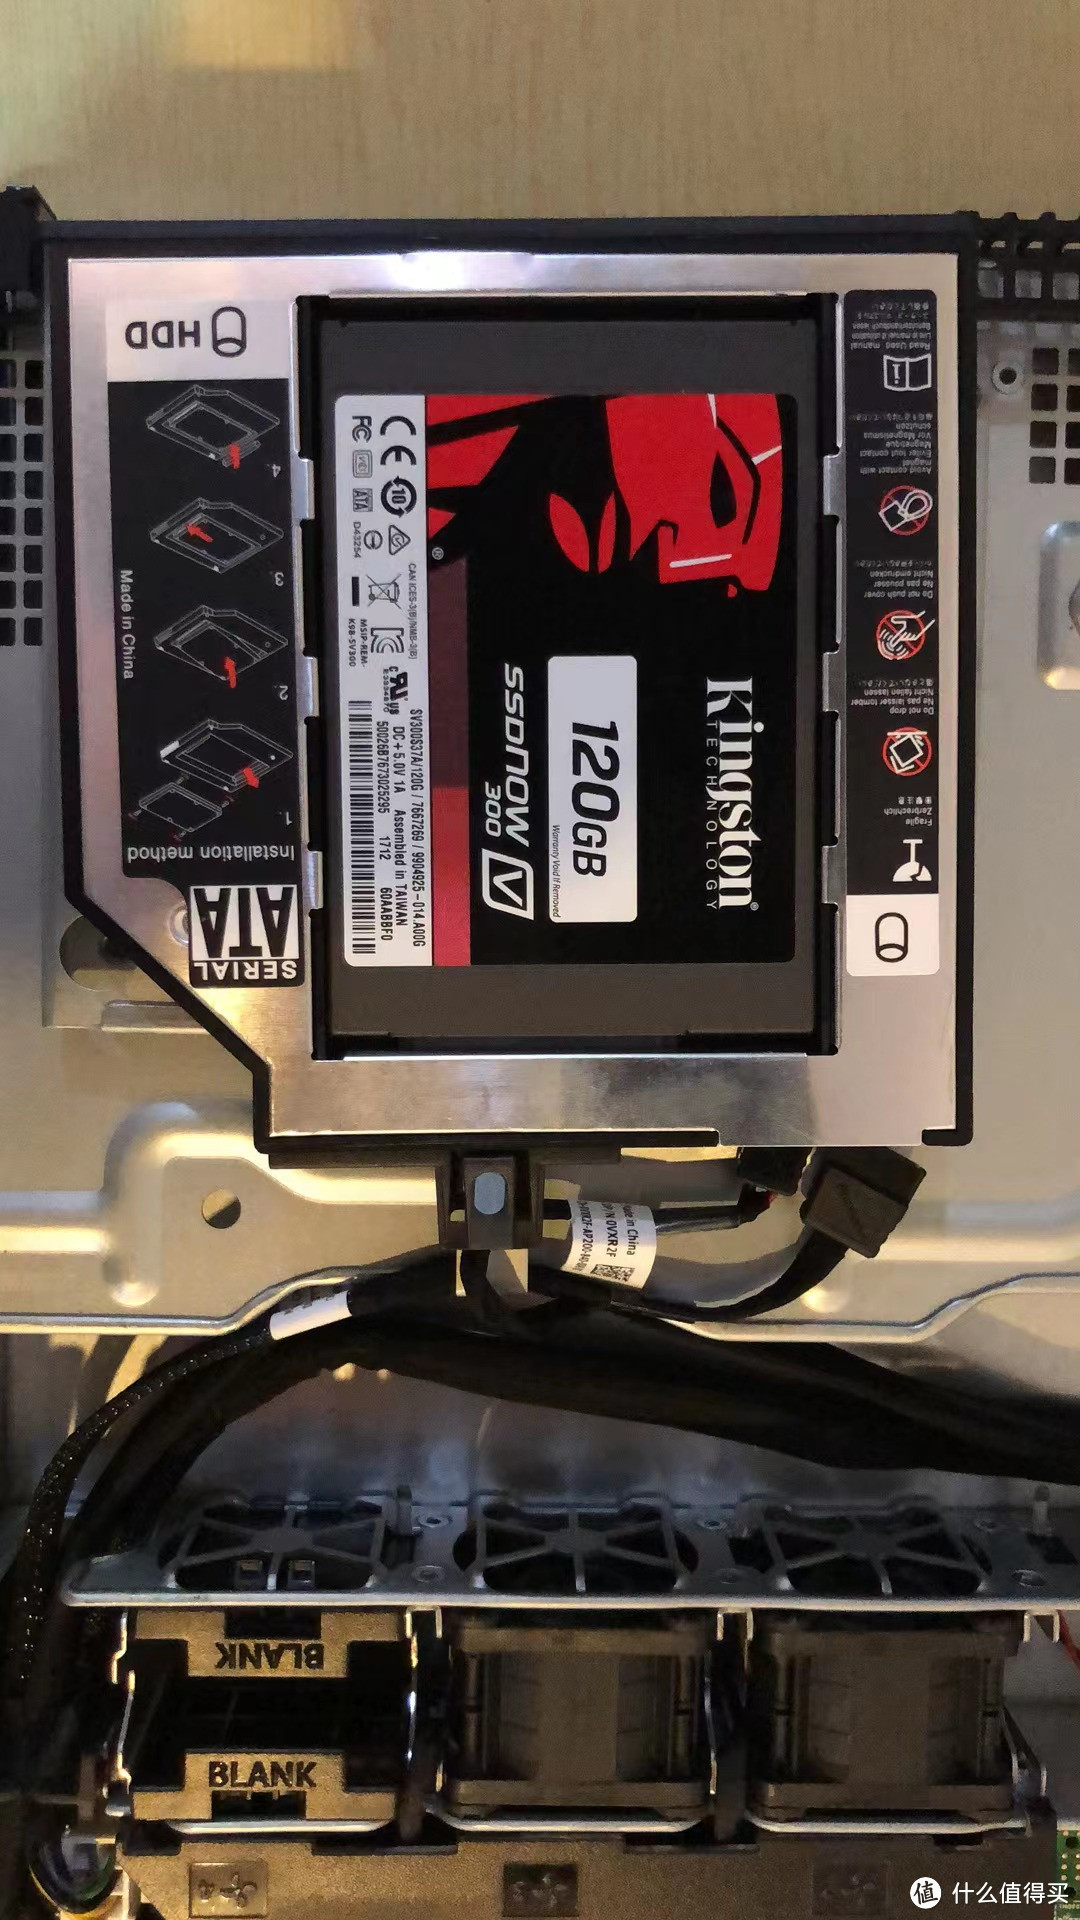 光驱位可以改装为SATA硬盘位，可装固态作为启动盘。